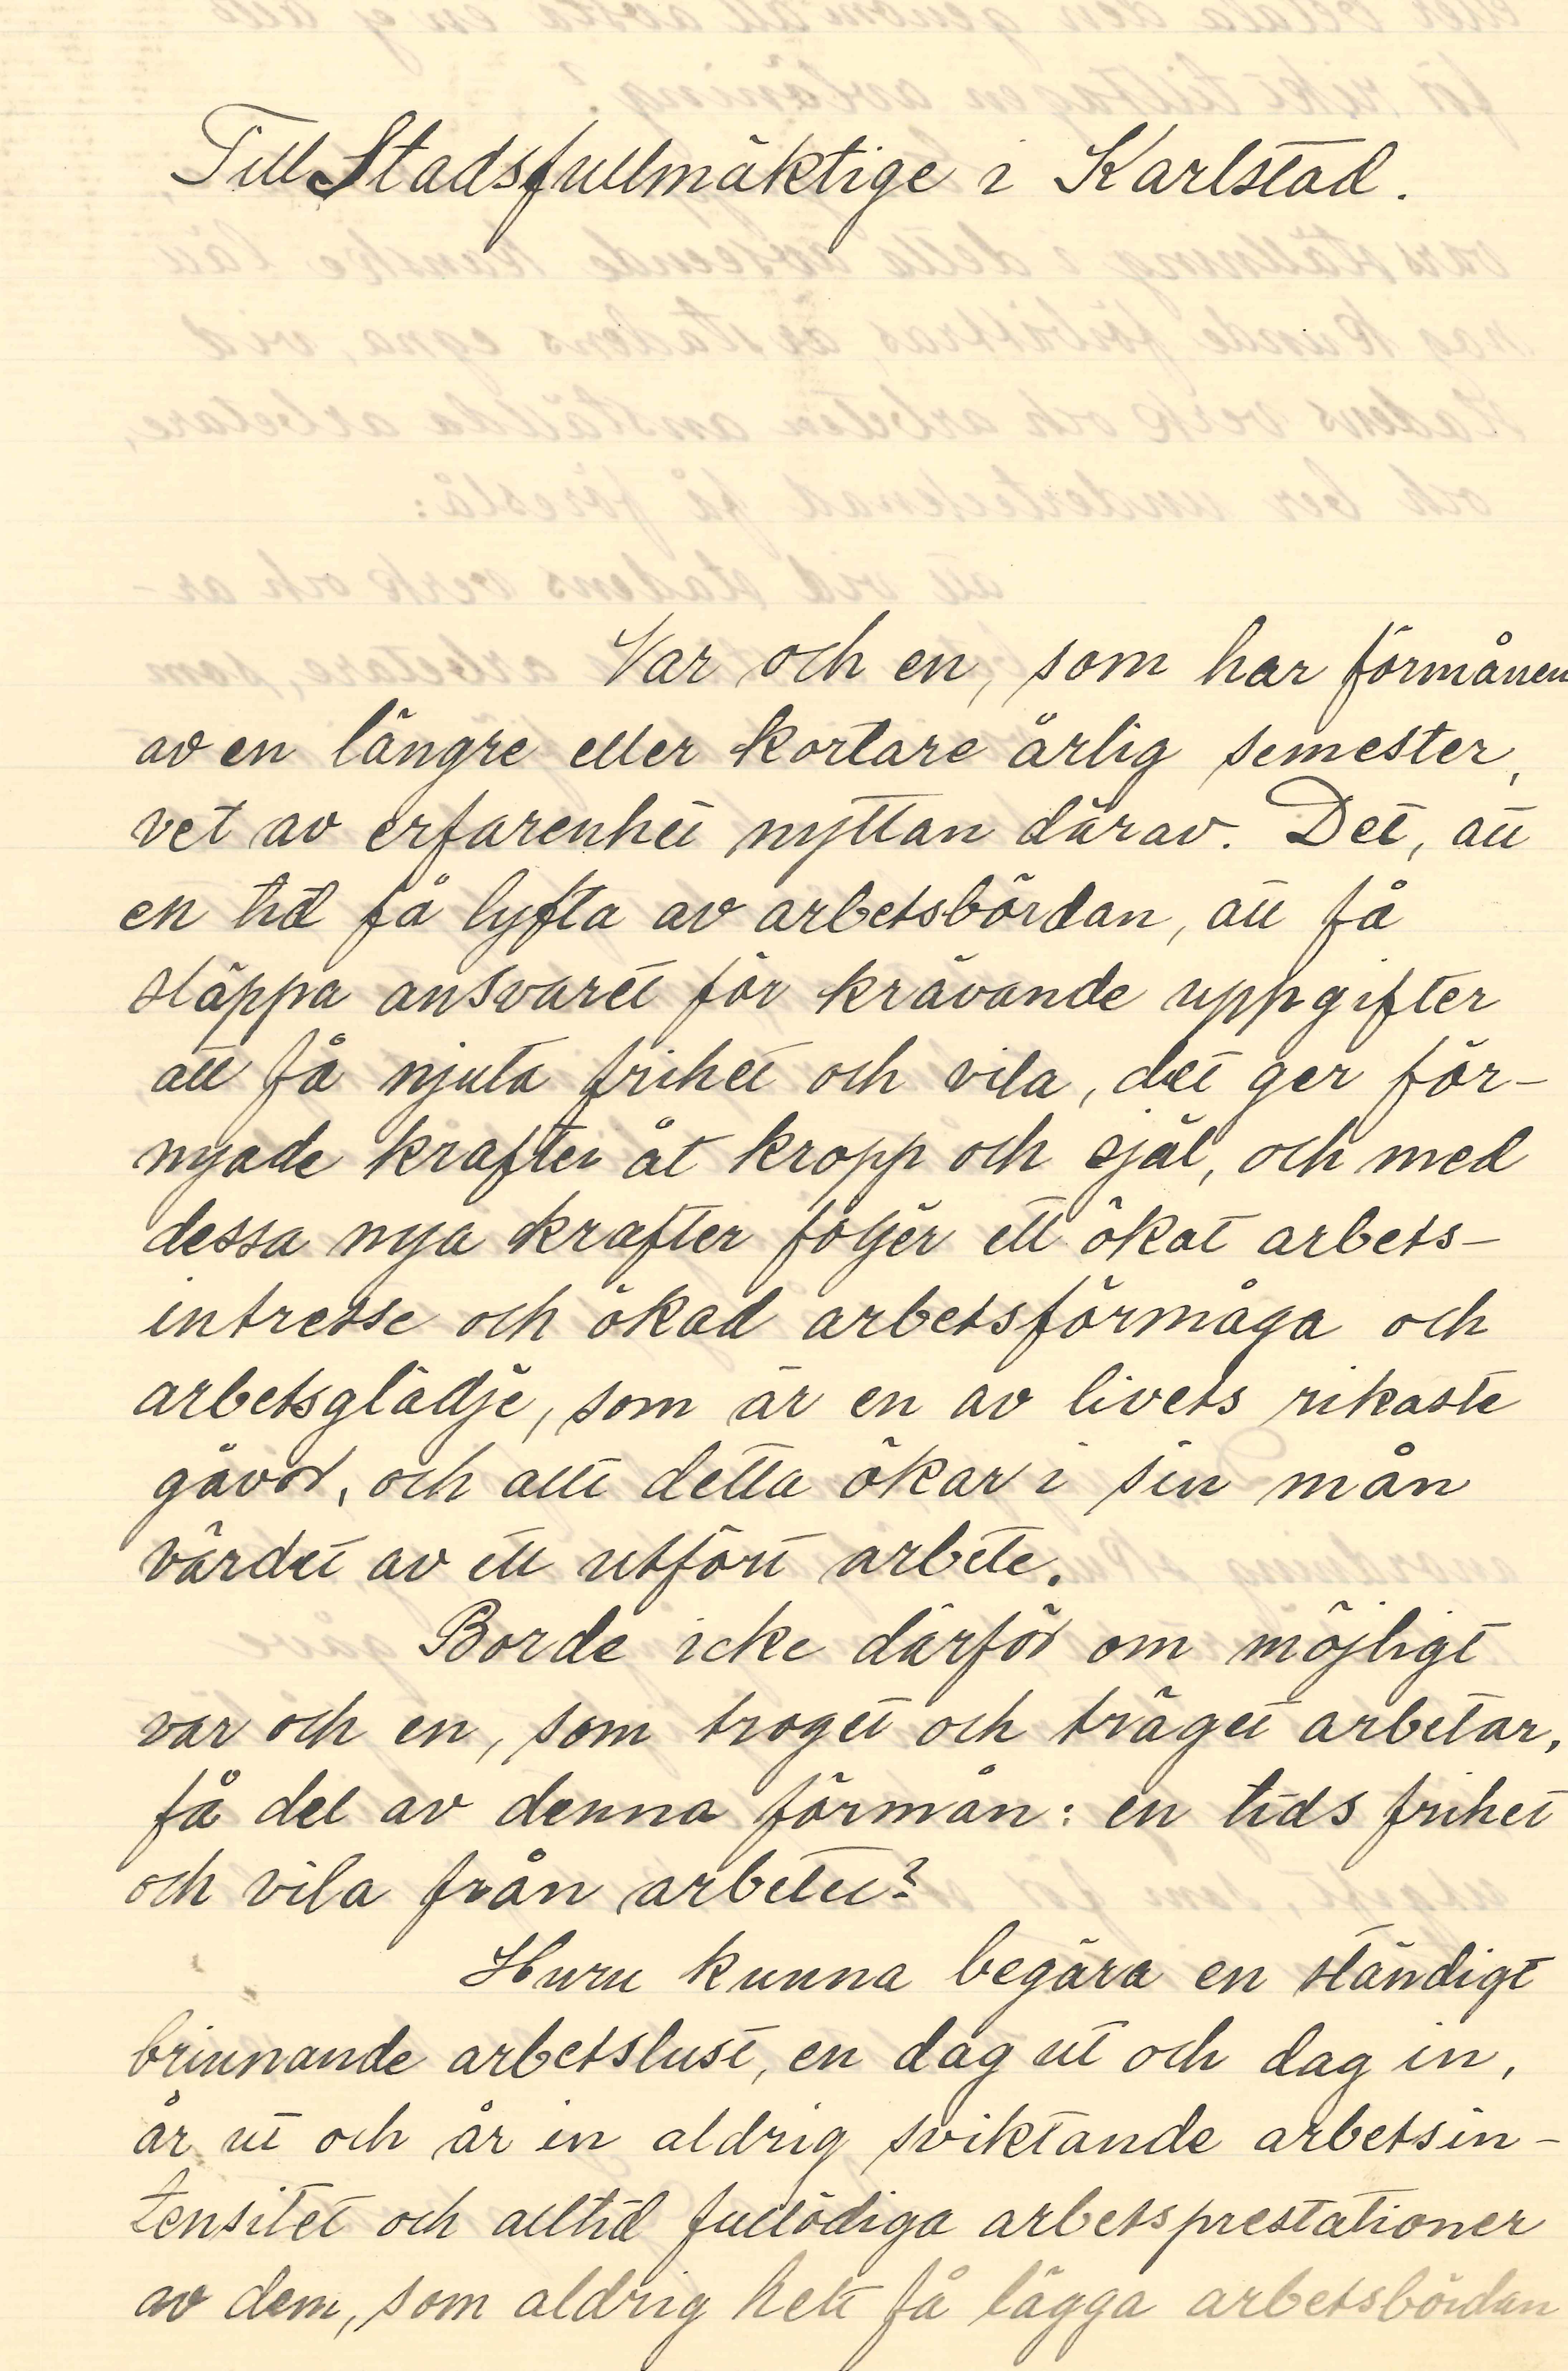 En handskriven motion av Anna Ljungkvist 1912, första kvinnan invald i stadsfullmäktige i Karlstad, om semester sid 1